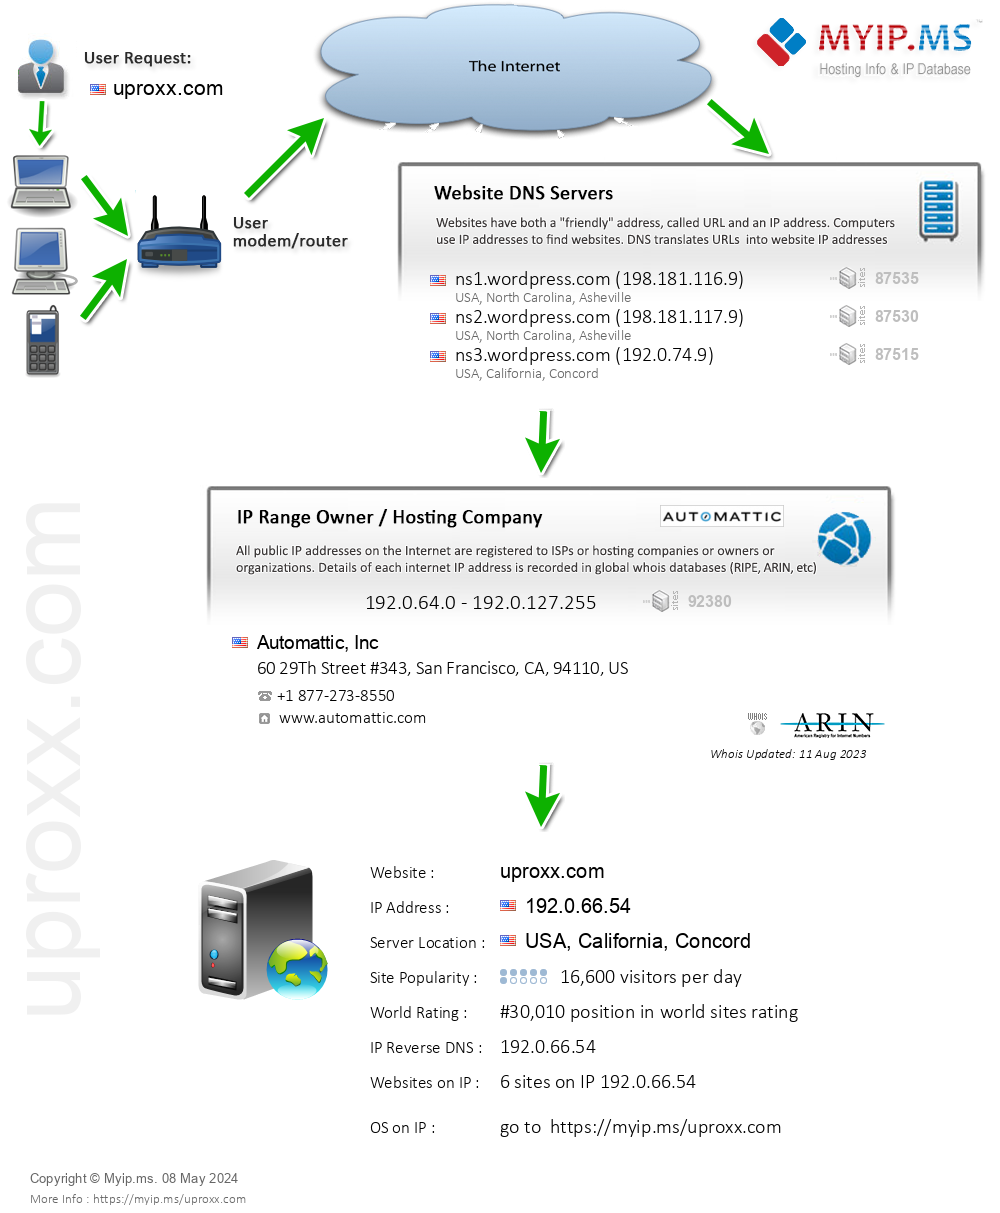 Uproxx.com - Website Hosting Visual IP Diagram